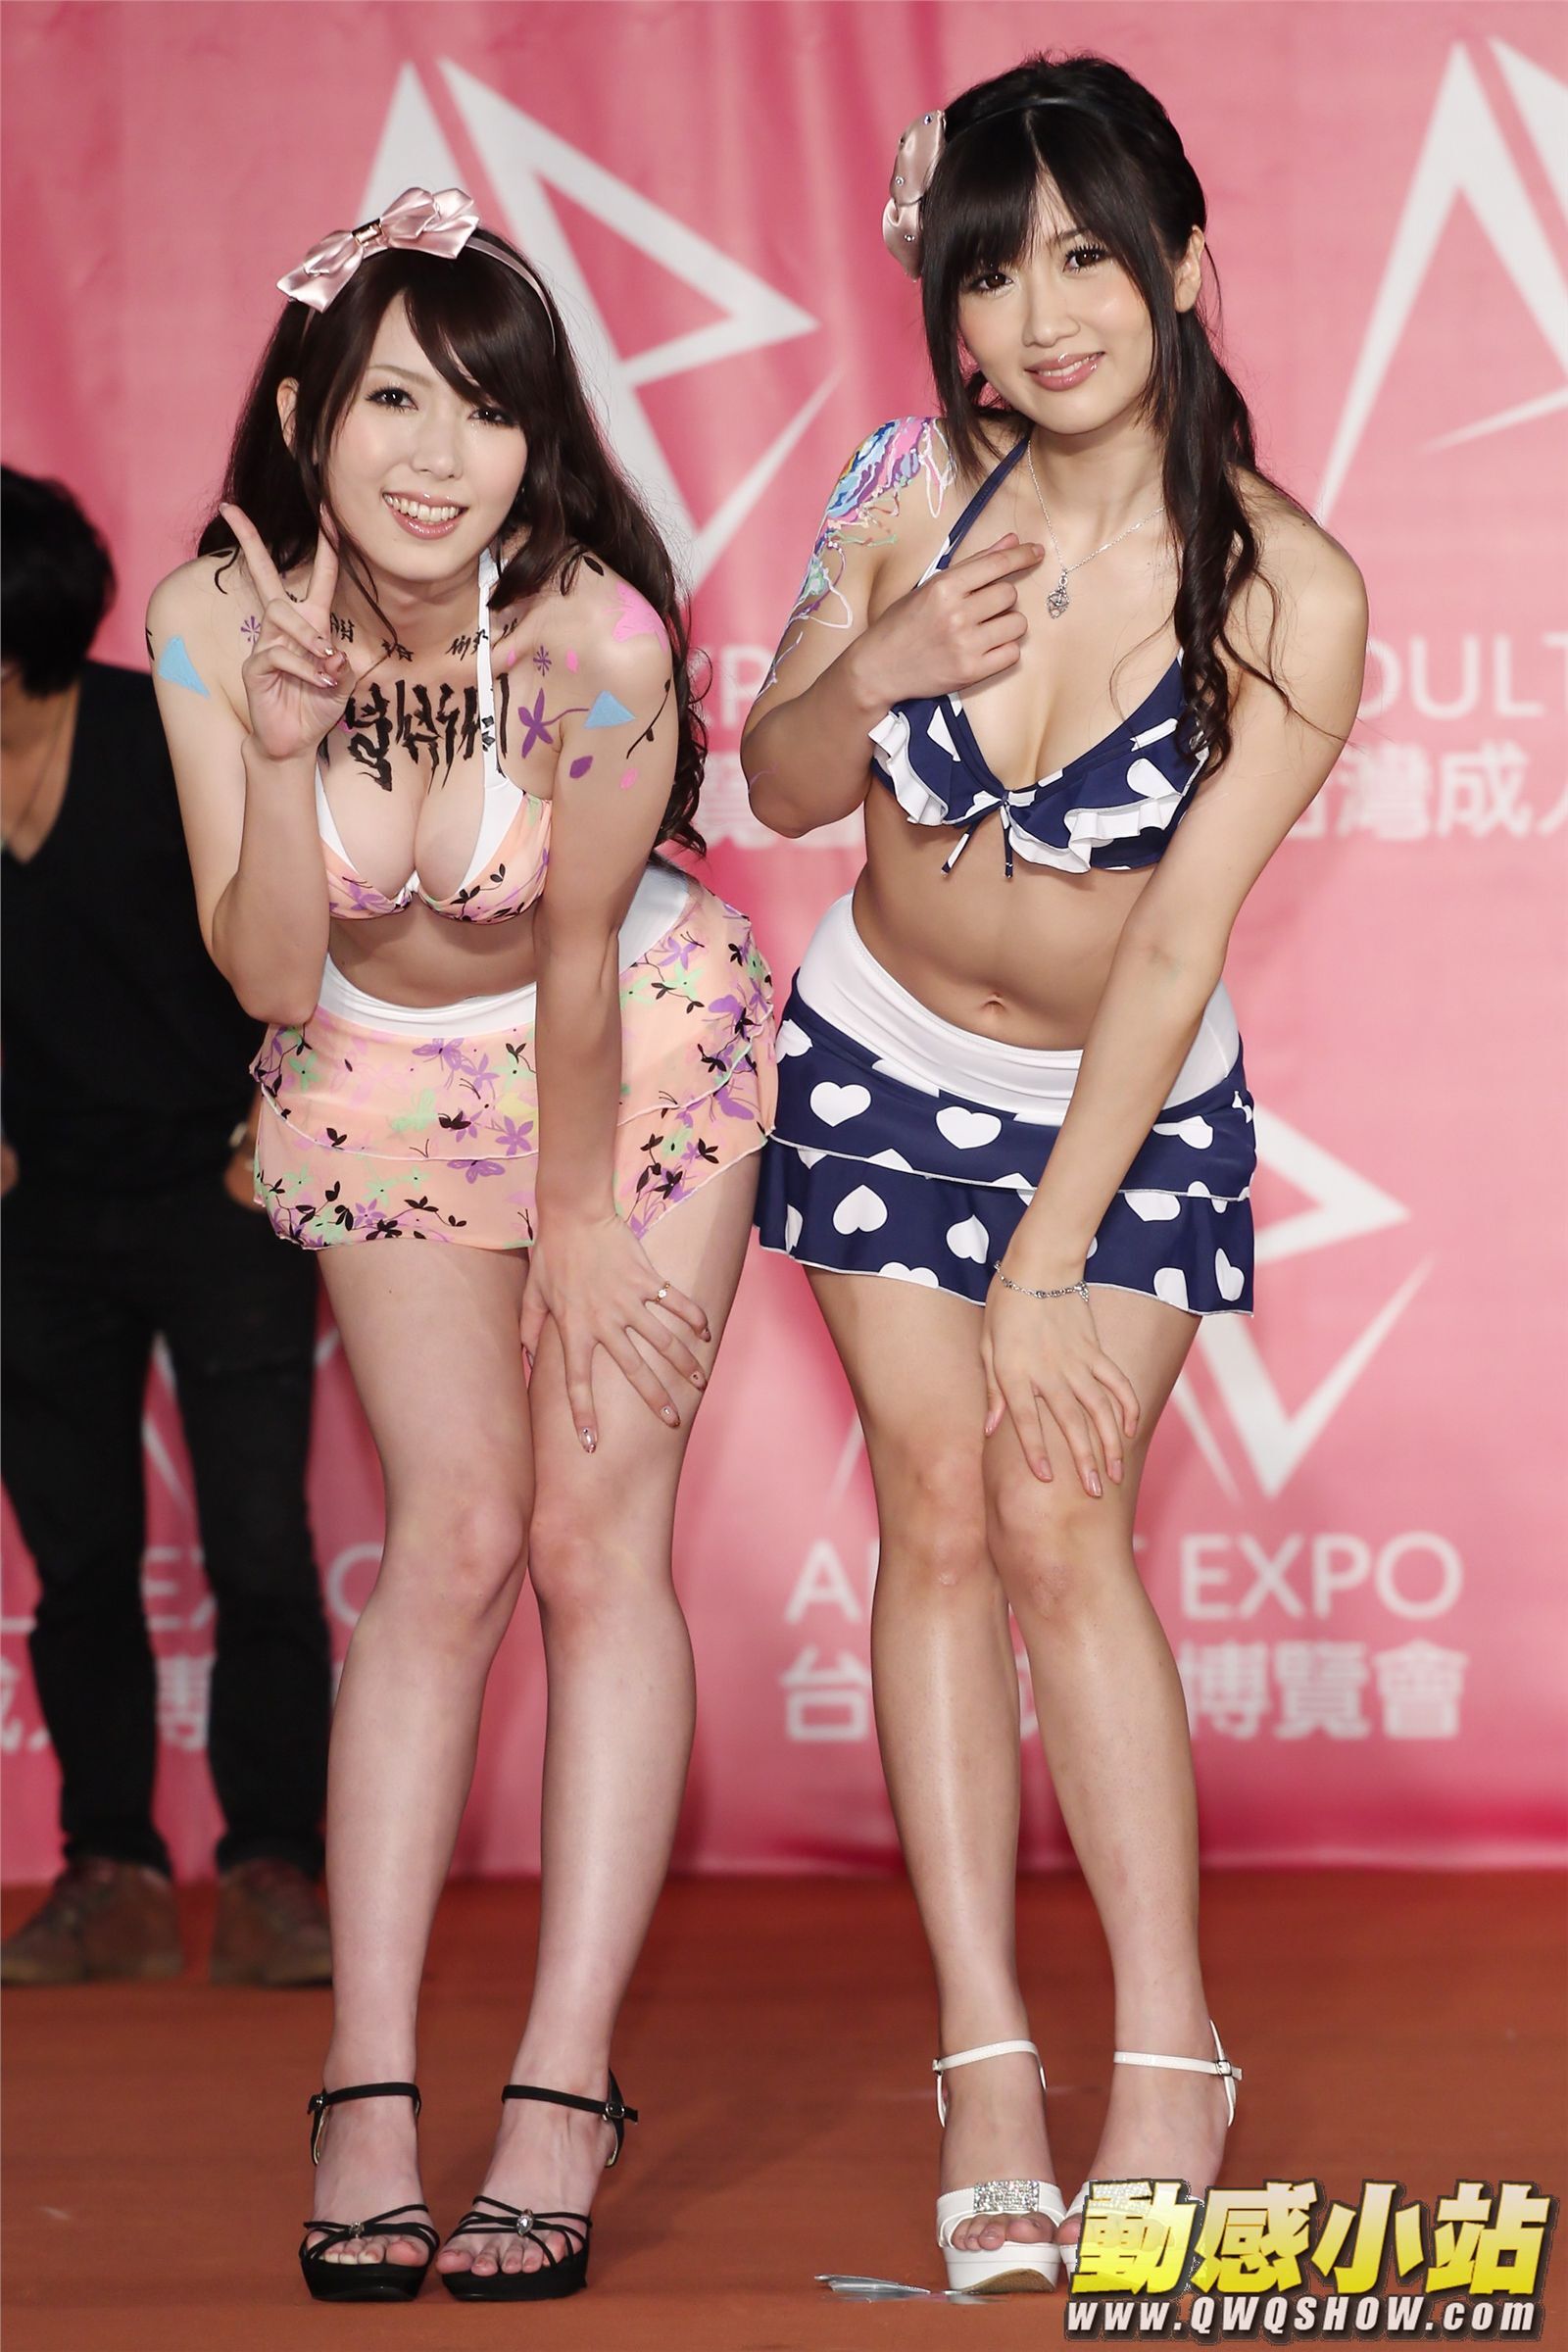 人體彩繪 國際衝浪大賽辣妹熱舞 av女優 Model Show 台灣第一屆成人